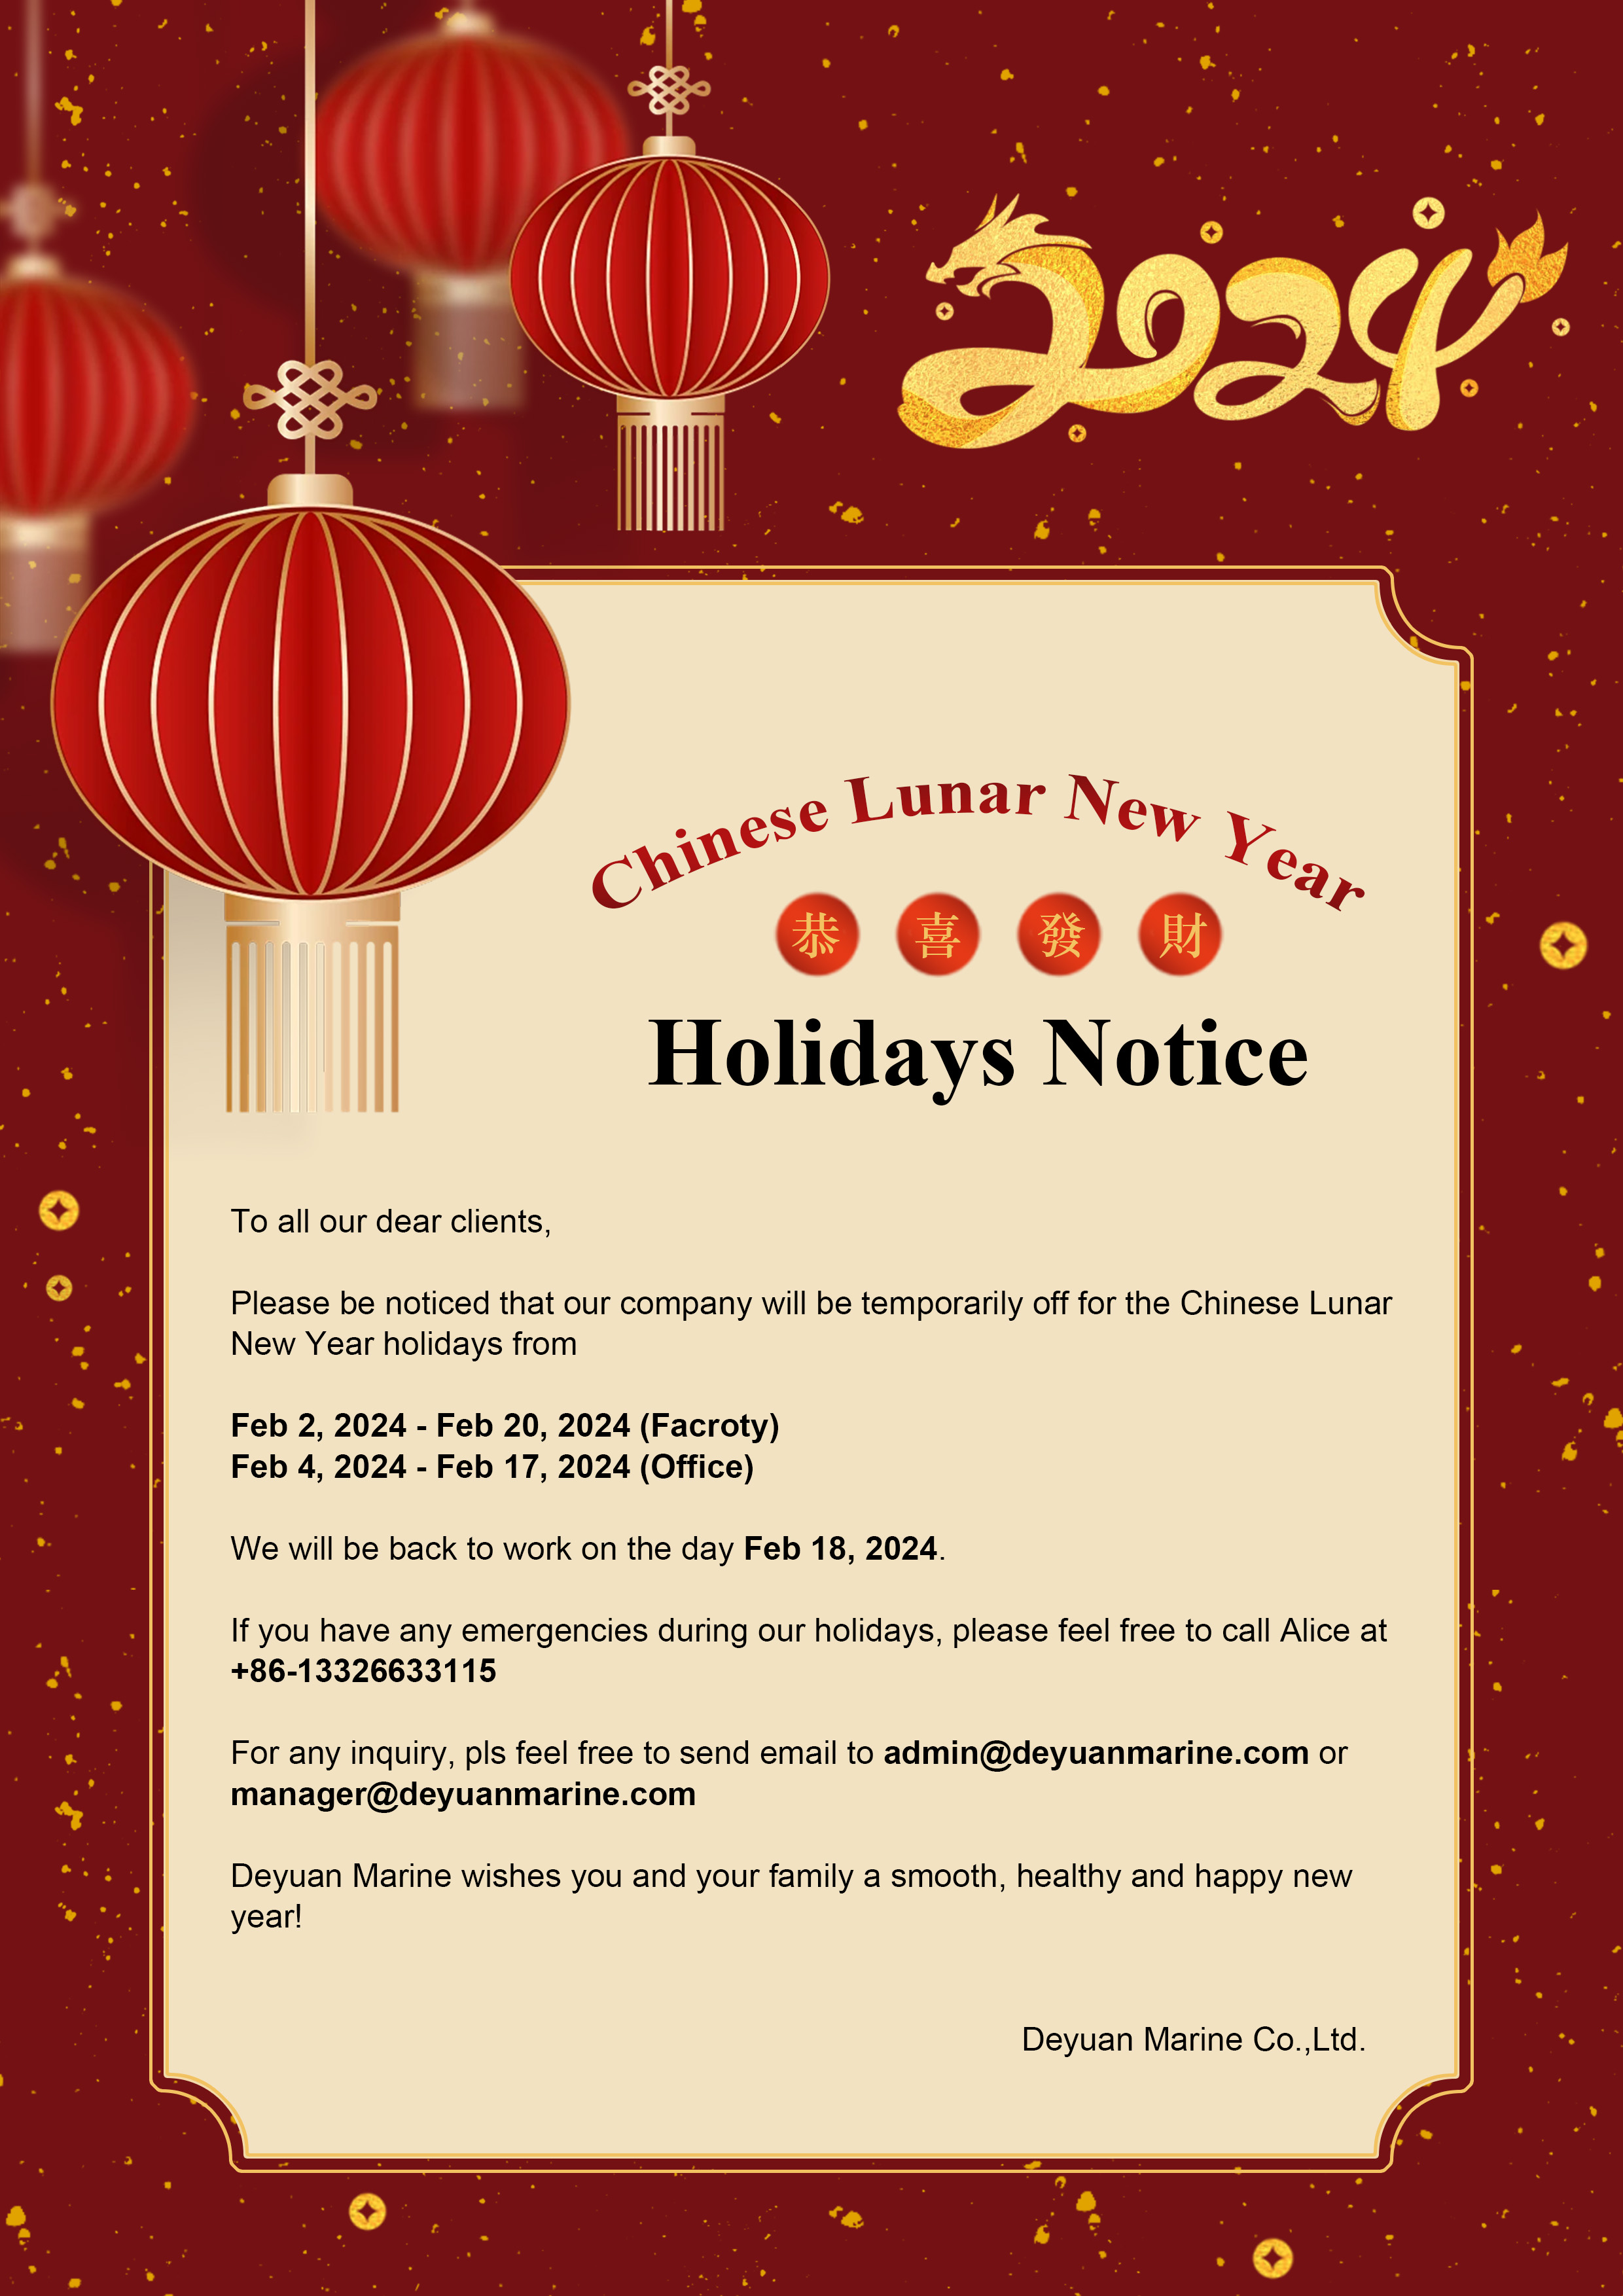 DEYUAN MARINE - Lunar New Year Holiday Notice